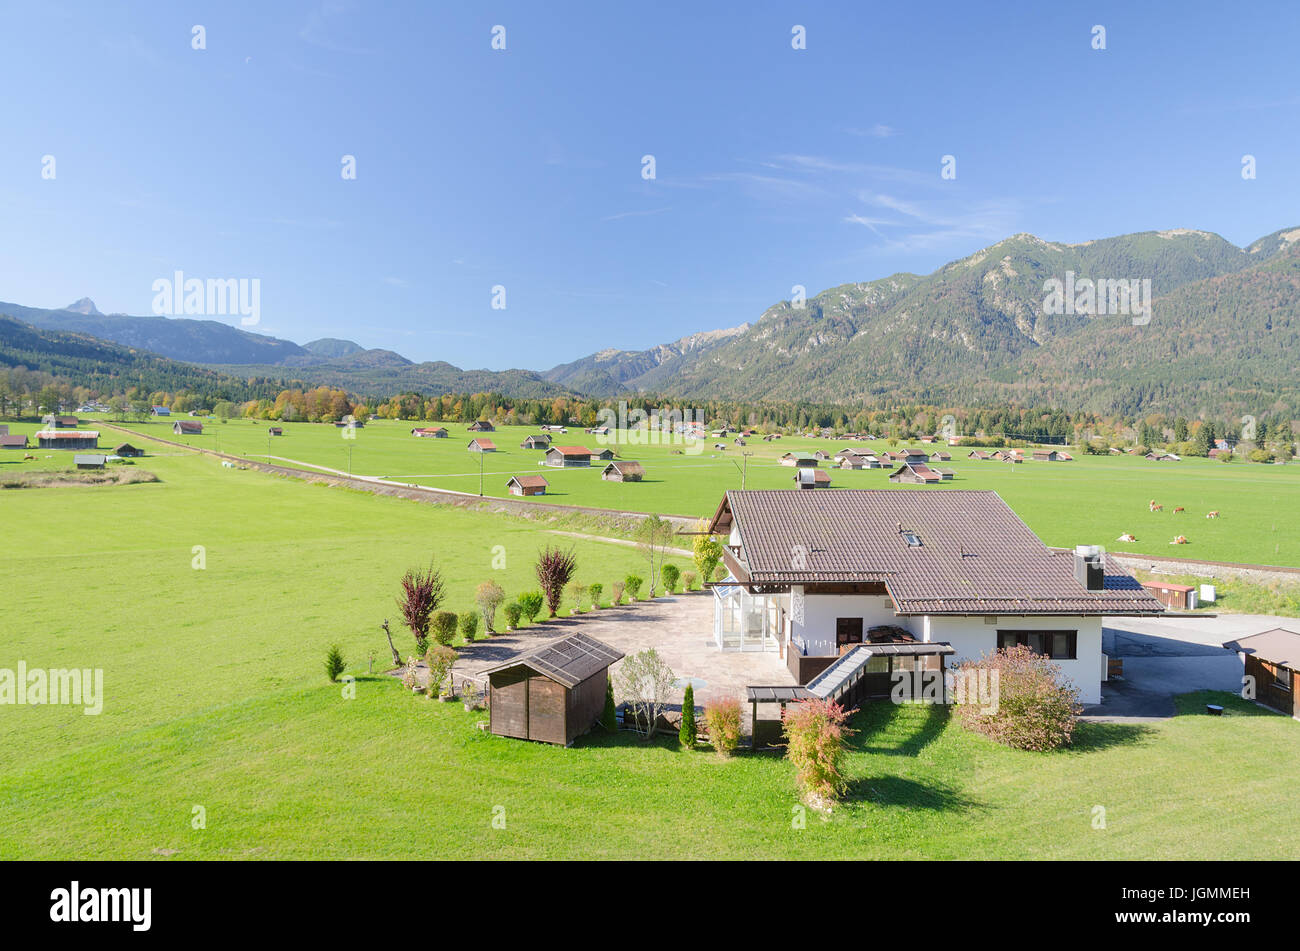 Vista del valle de pastizales en tierras altas alpinas en las estribaciones de los Alpes bávaros Foto de stock